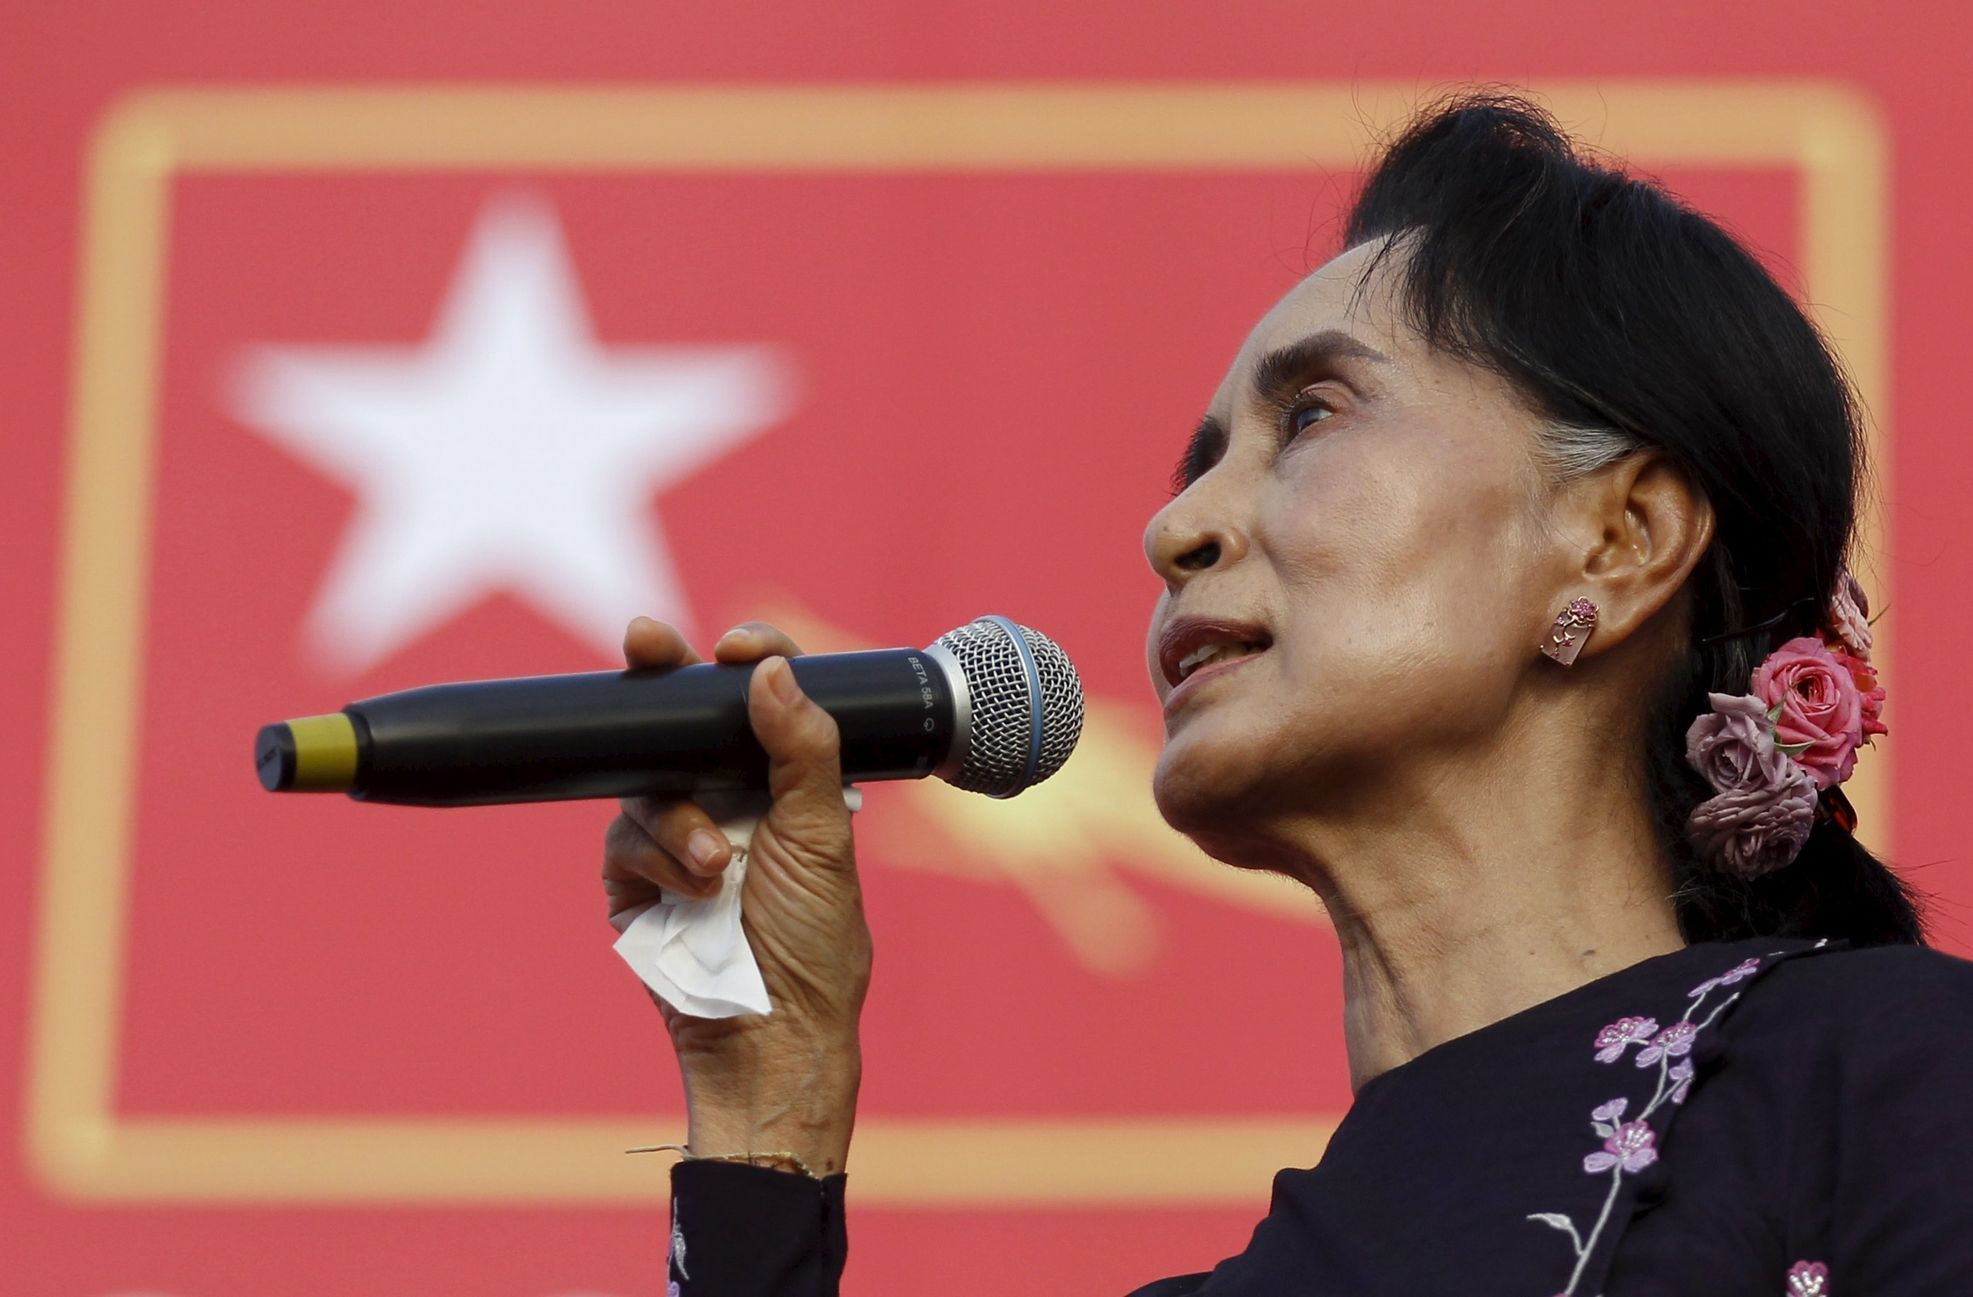 Barma - volby - Aun Schan Su Ťij